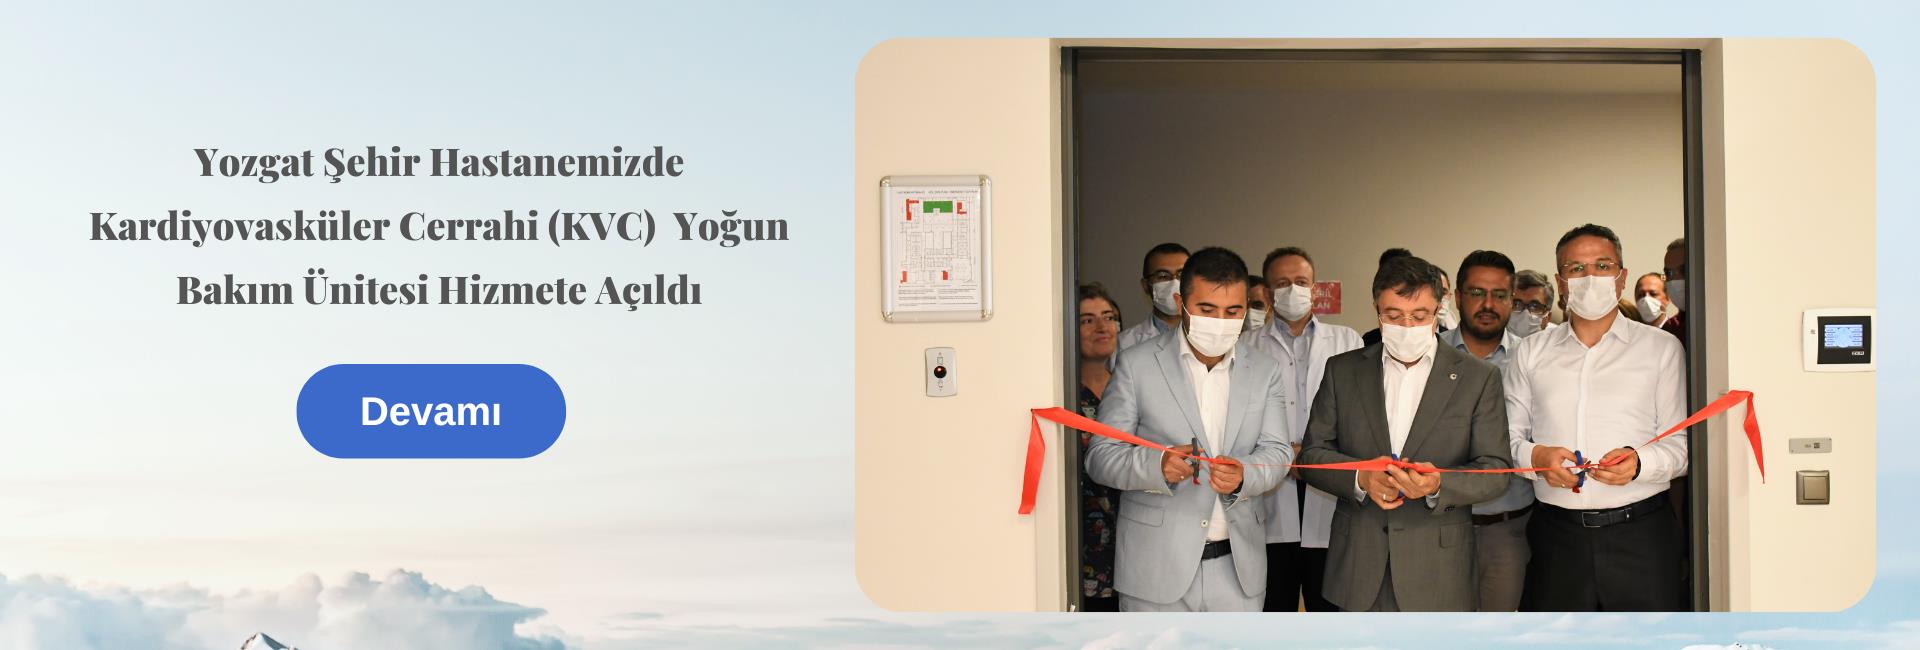 Yozgat Şehir Hastanemizde Kardiyovasküler Cerrahi (KVC)  Yoğun Bakım Ünitesi Hizmete Açıldı